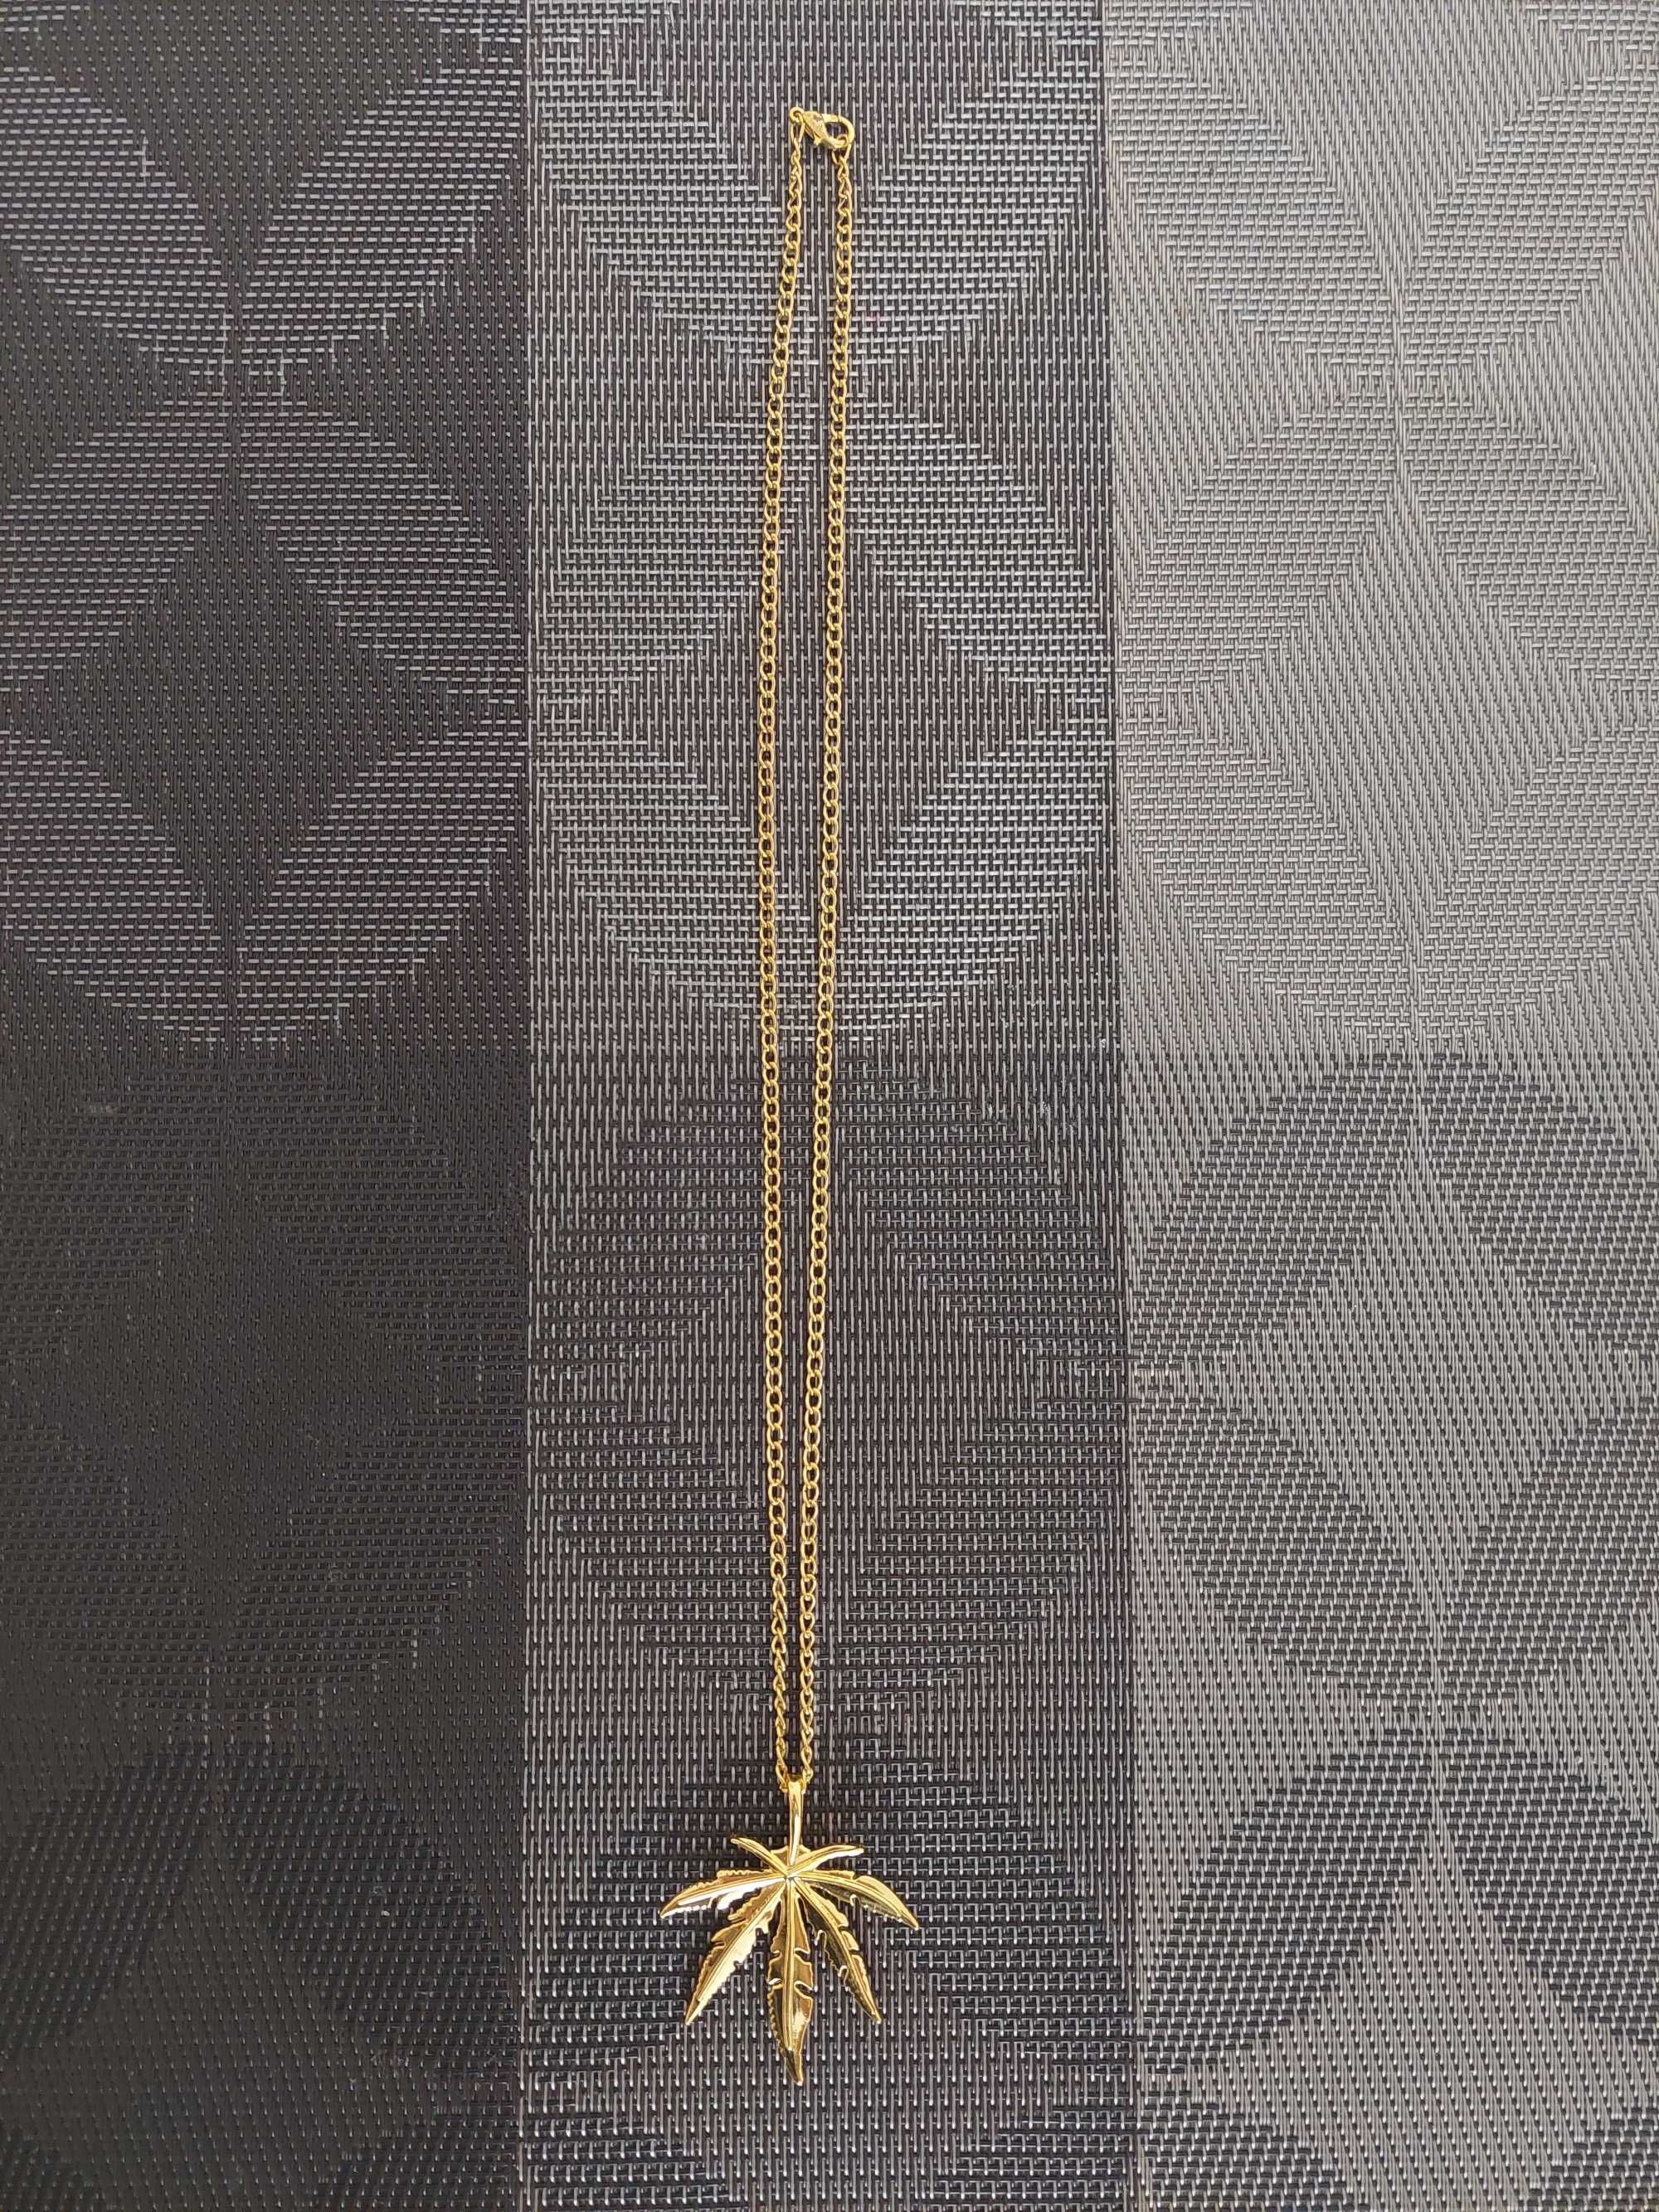 Naszyjnik złoty liść konopii